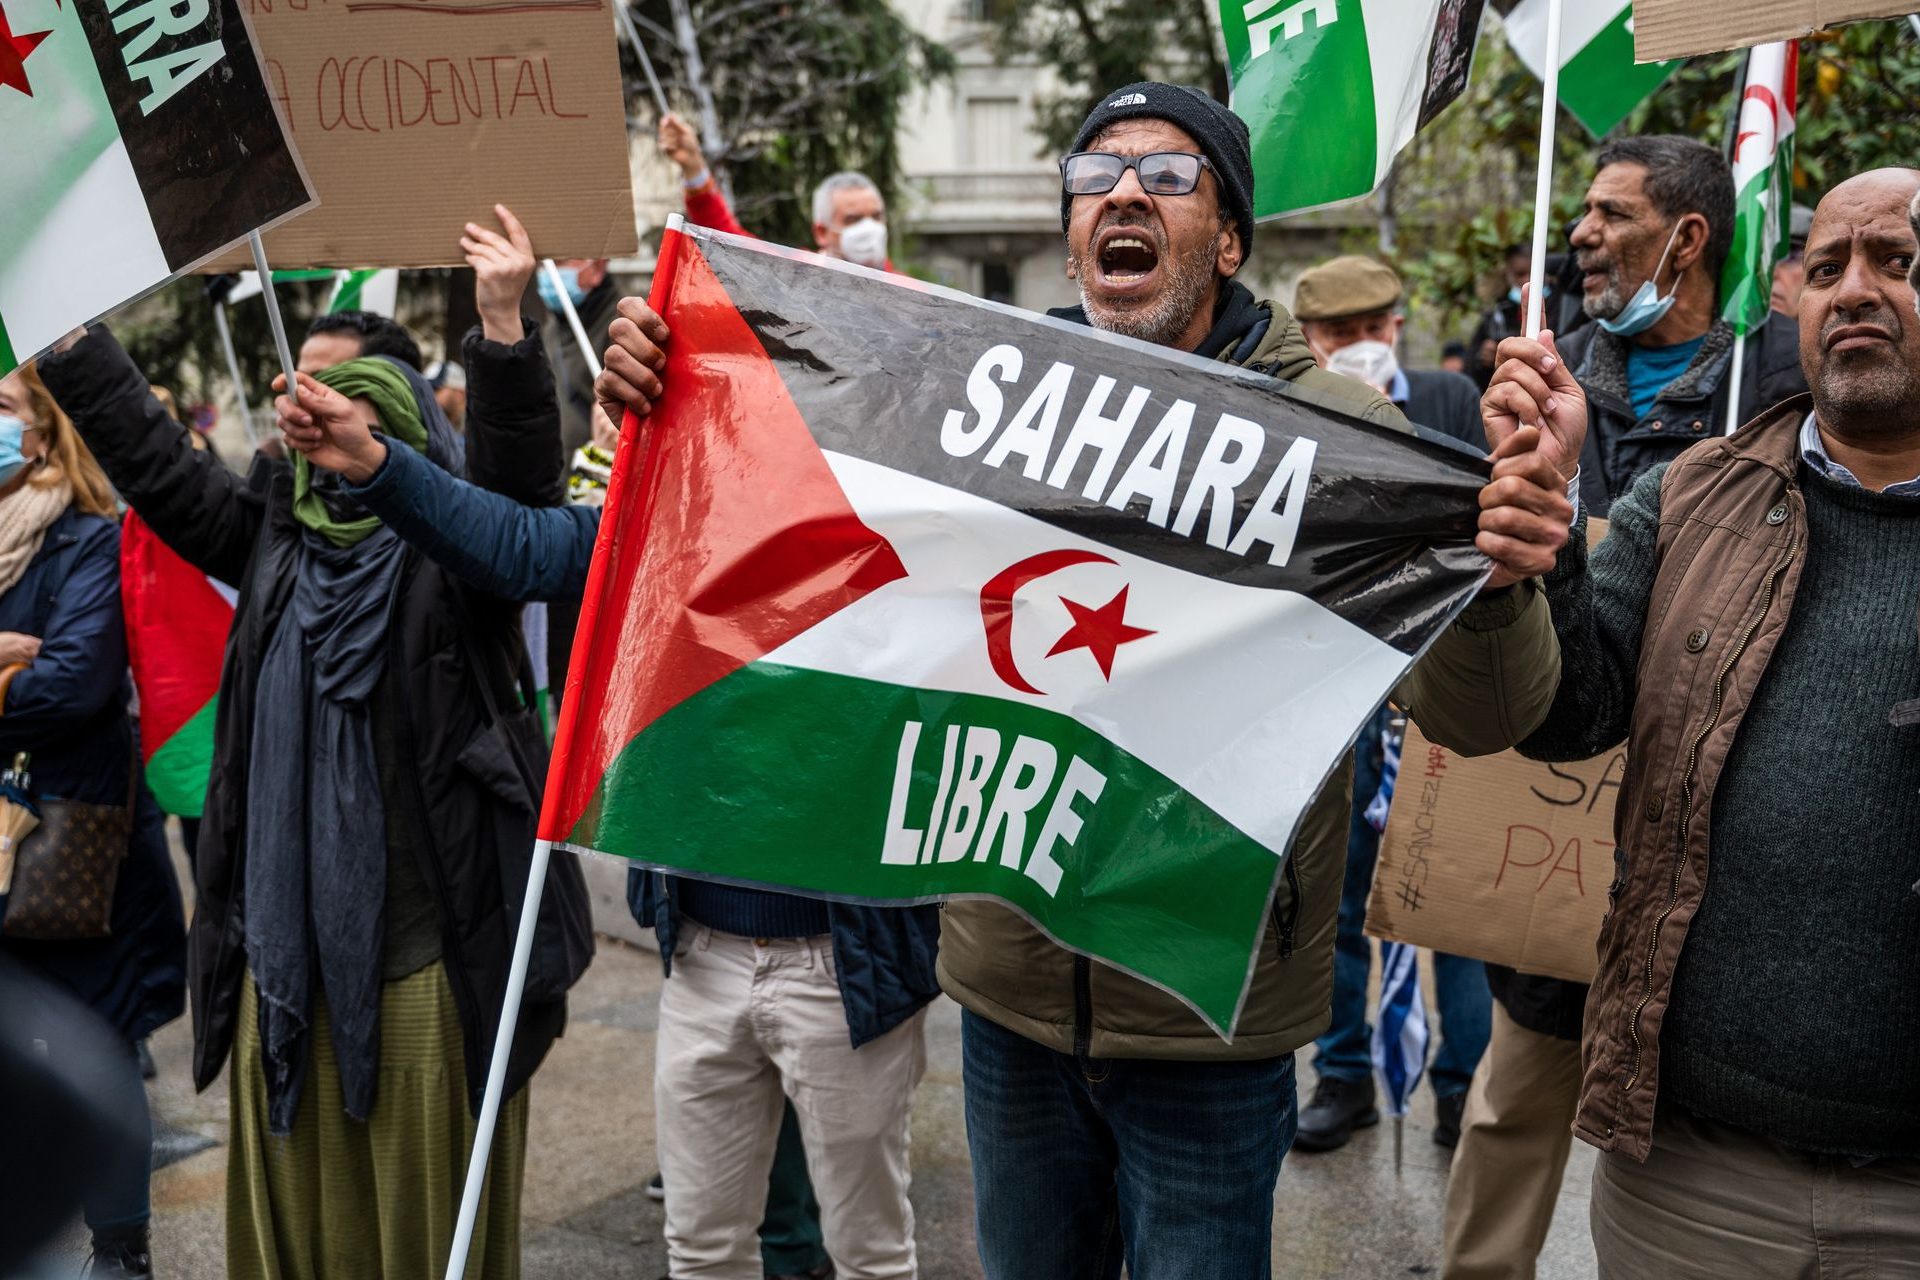 La question du Sahara occidental